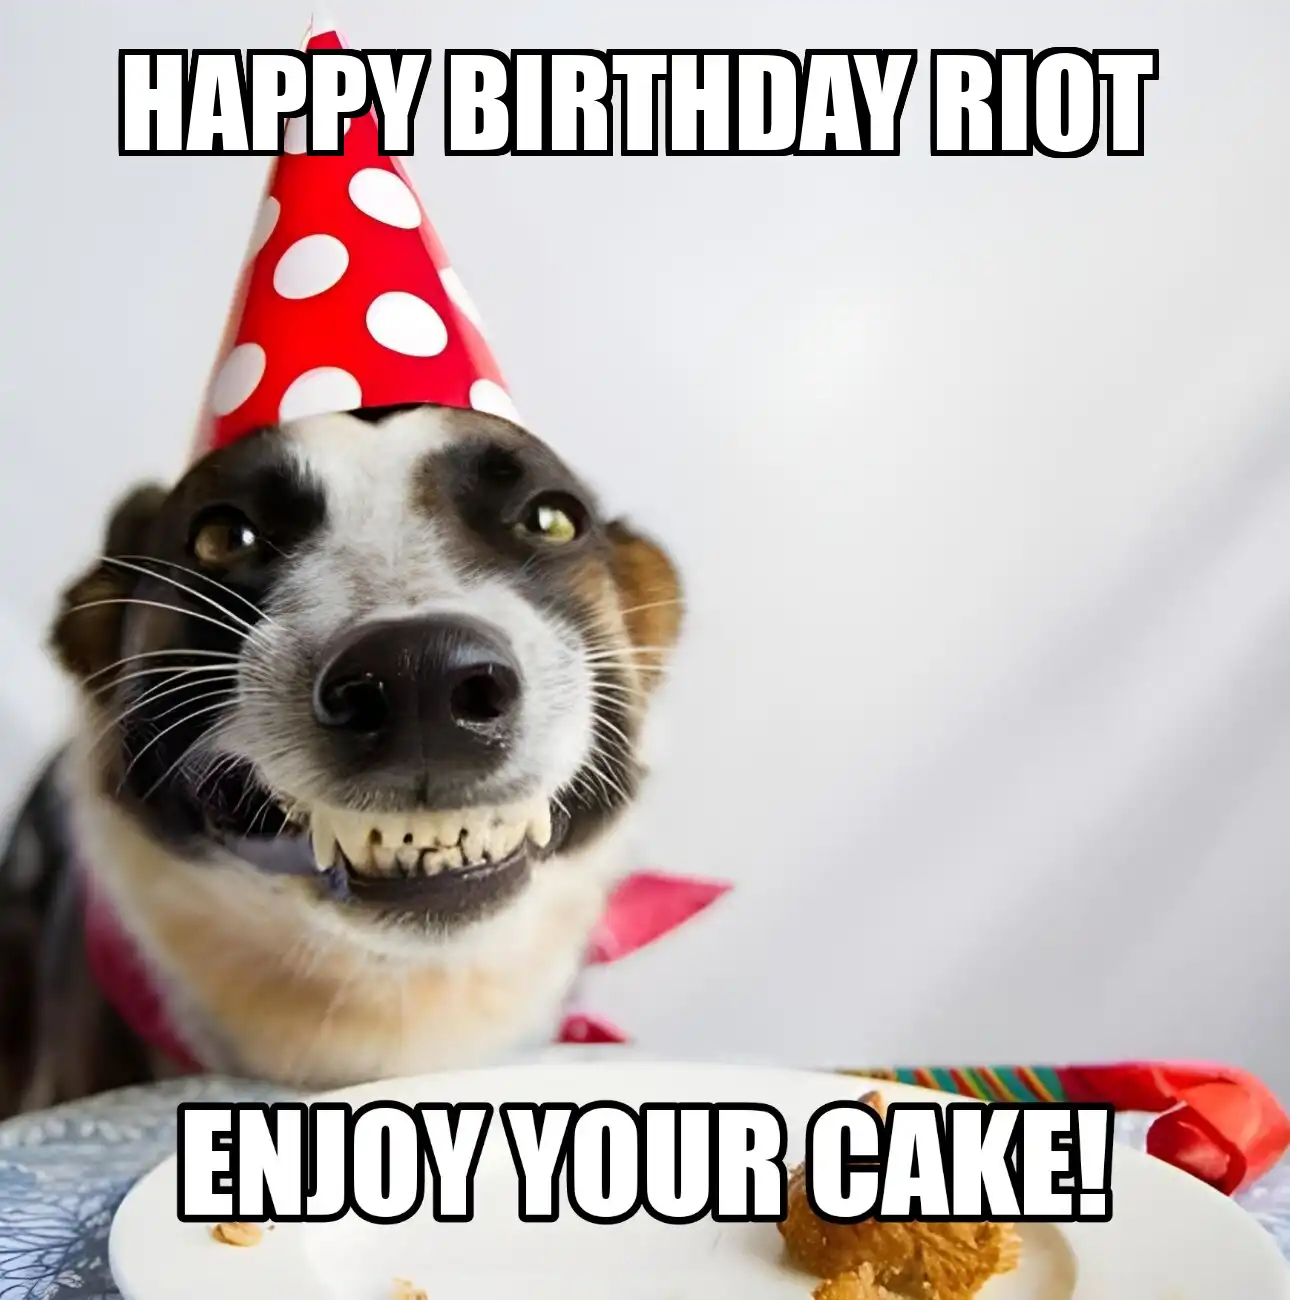 Happy Birthday Riot Enjoy Your Cake Dog Meme